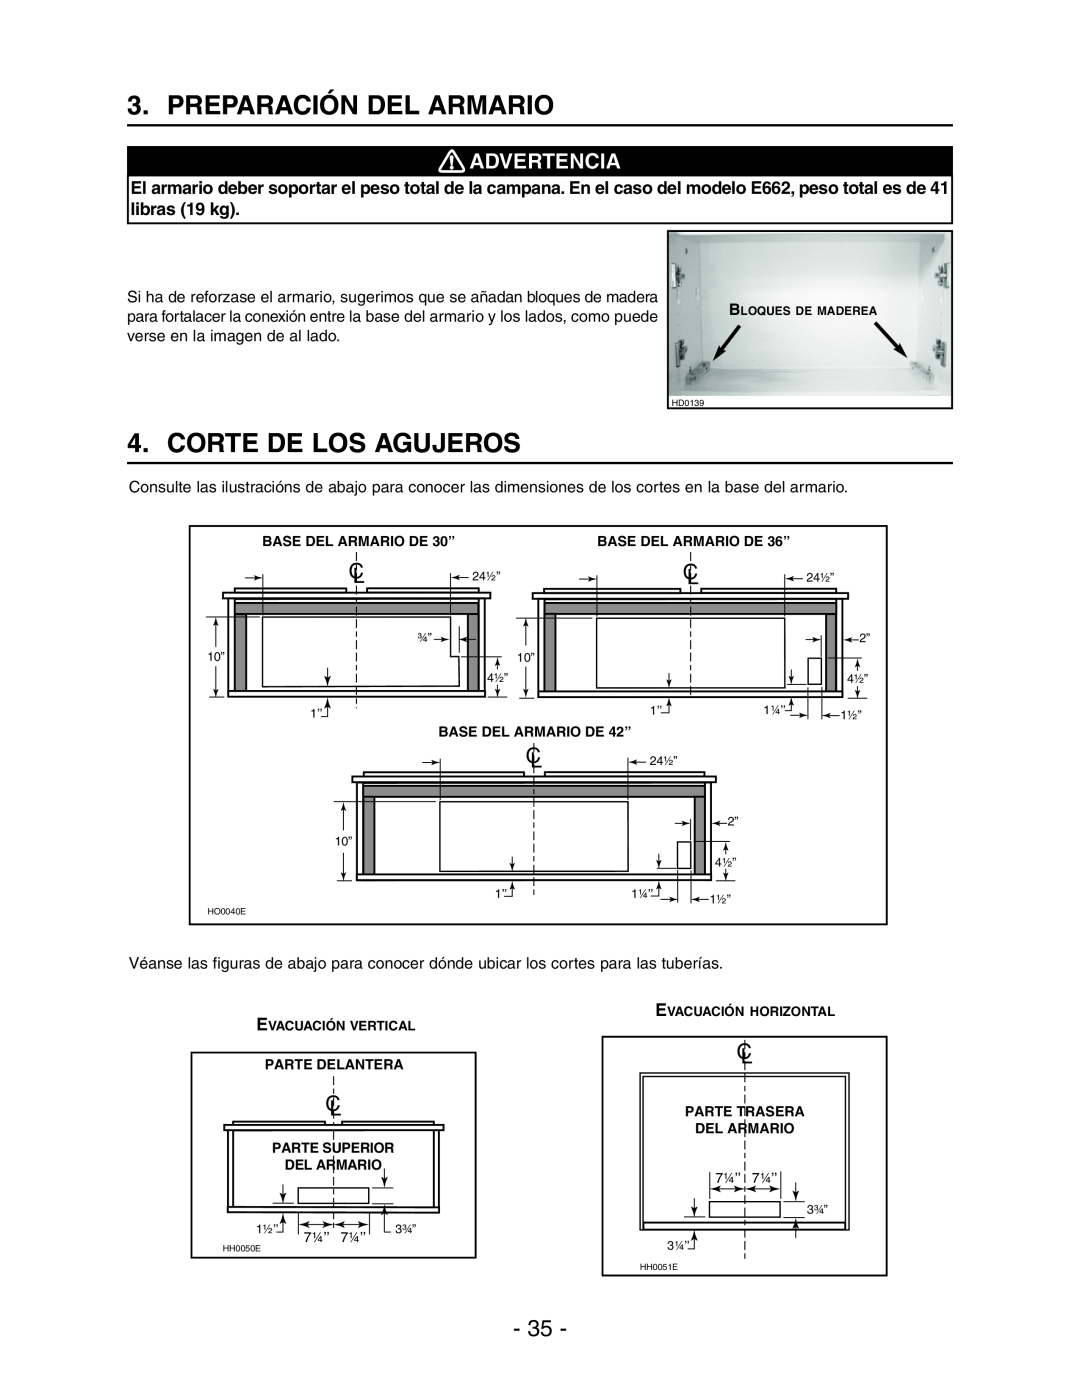 Broan Model E662 installation instructions Preparación Del Armario, Corte De Los Agujeros, Advertencia 